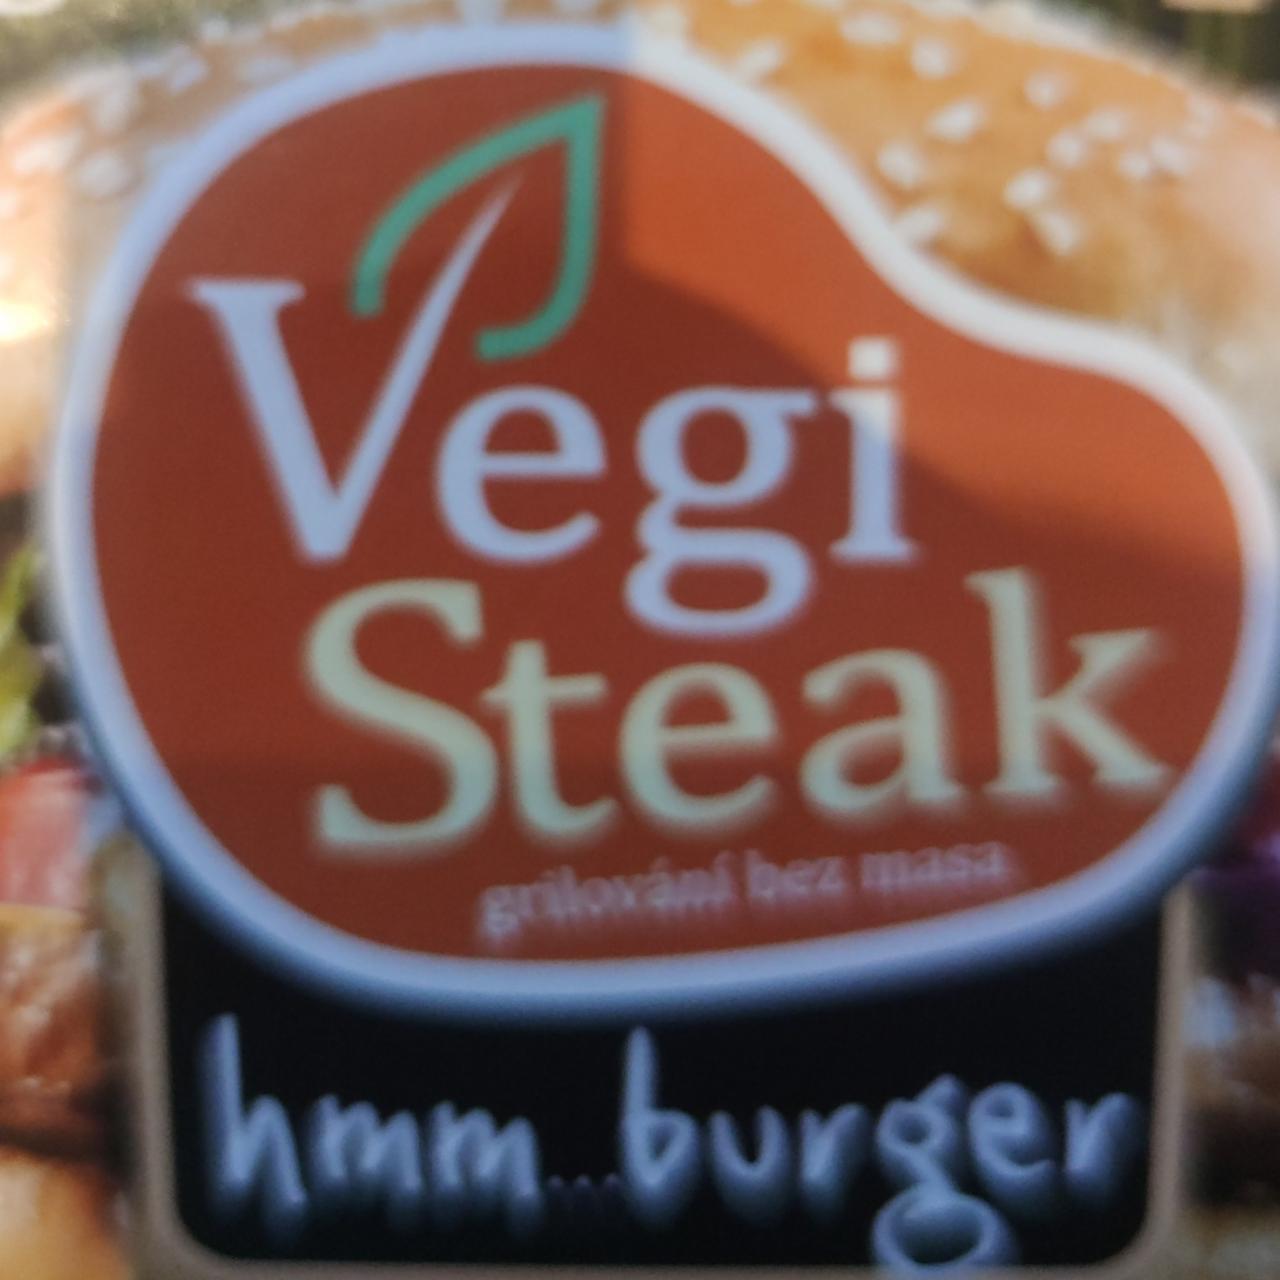 Fotografie - hmm…burger VegiSteak